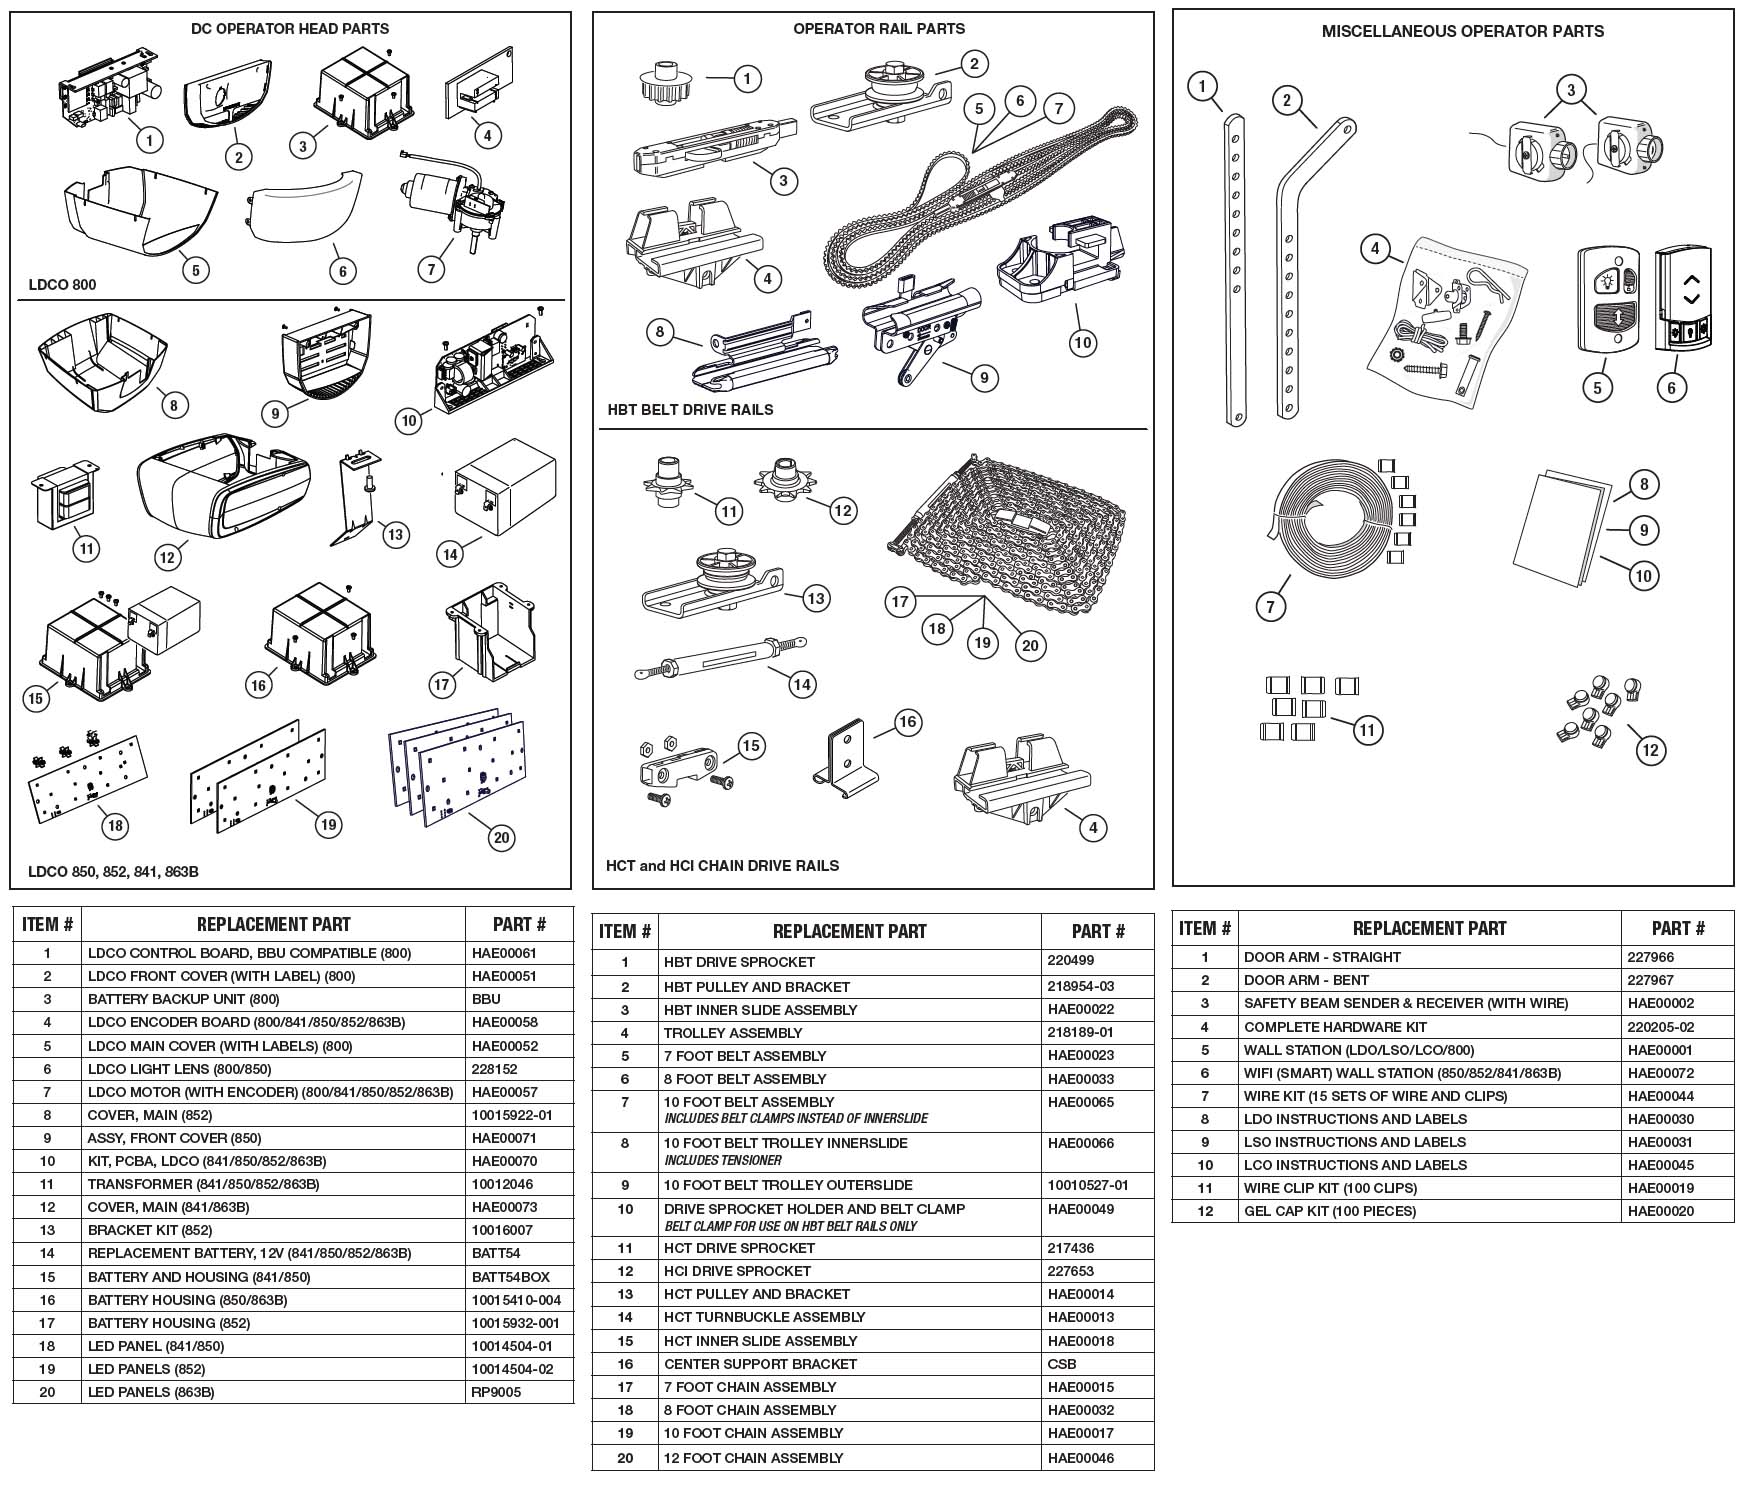 Linear LDCO852 Garage Door Opener Parts Diagram and List